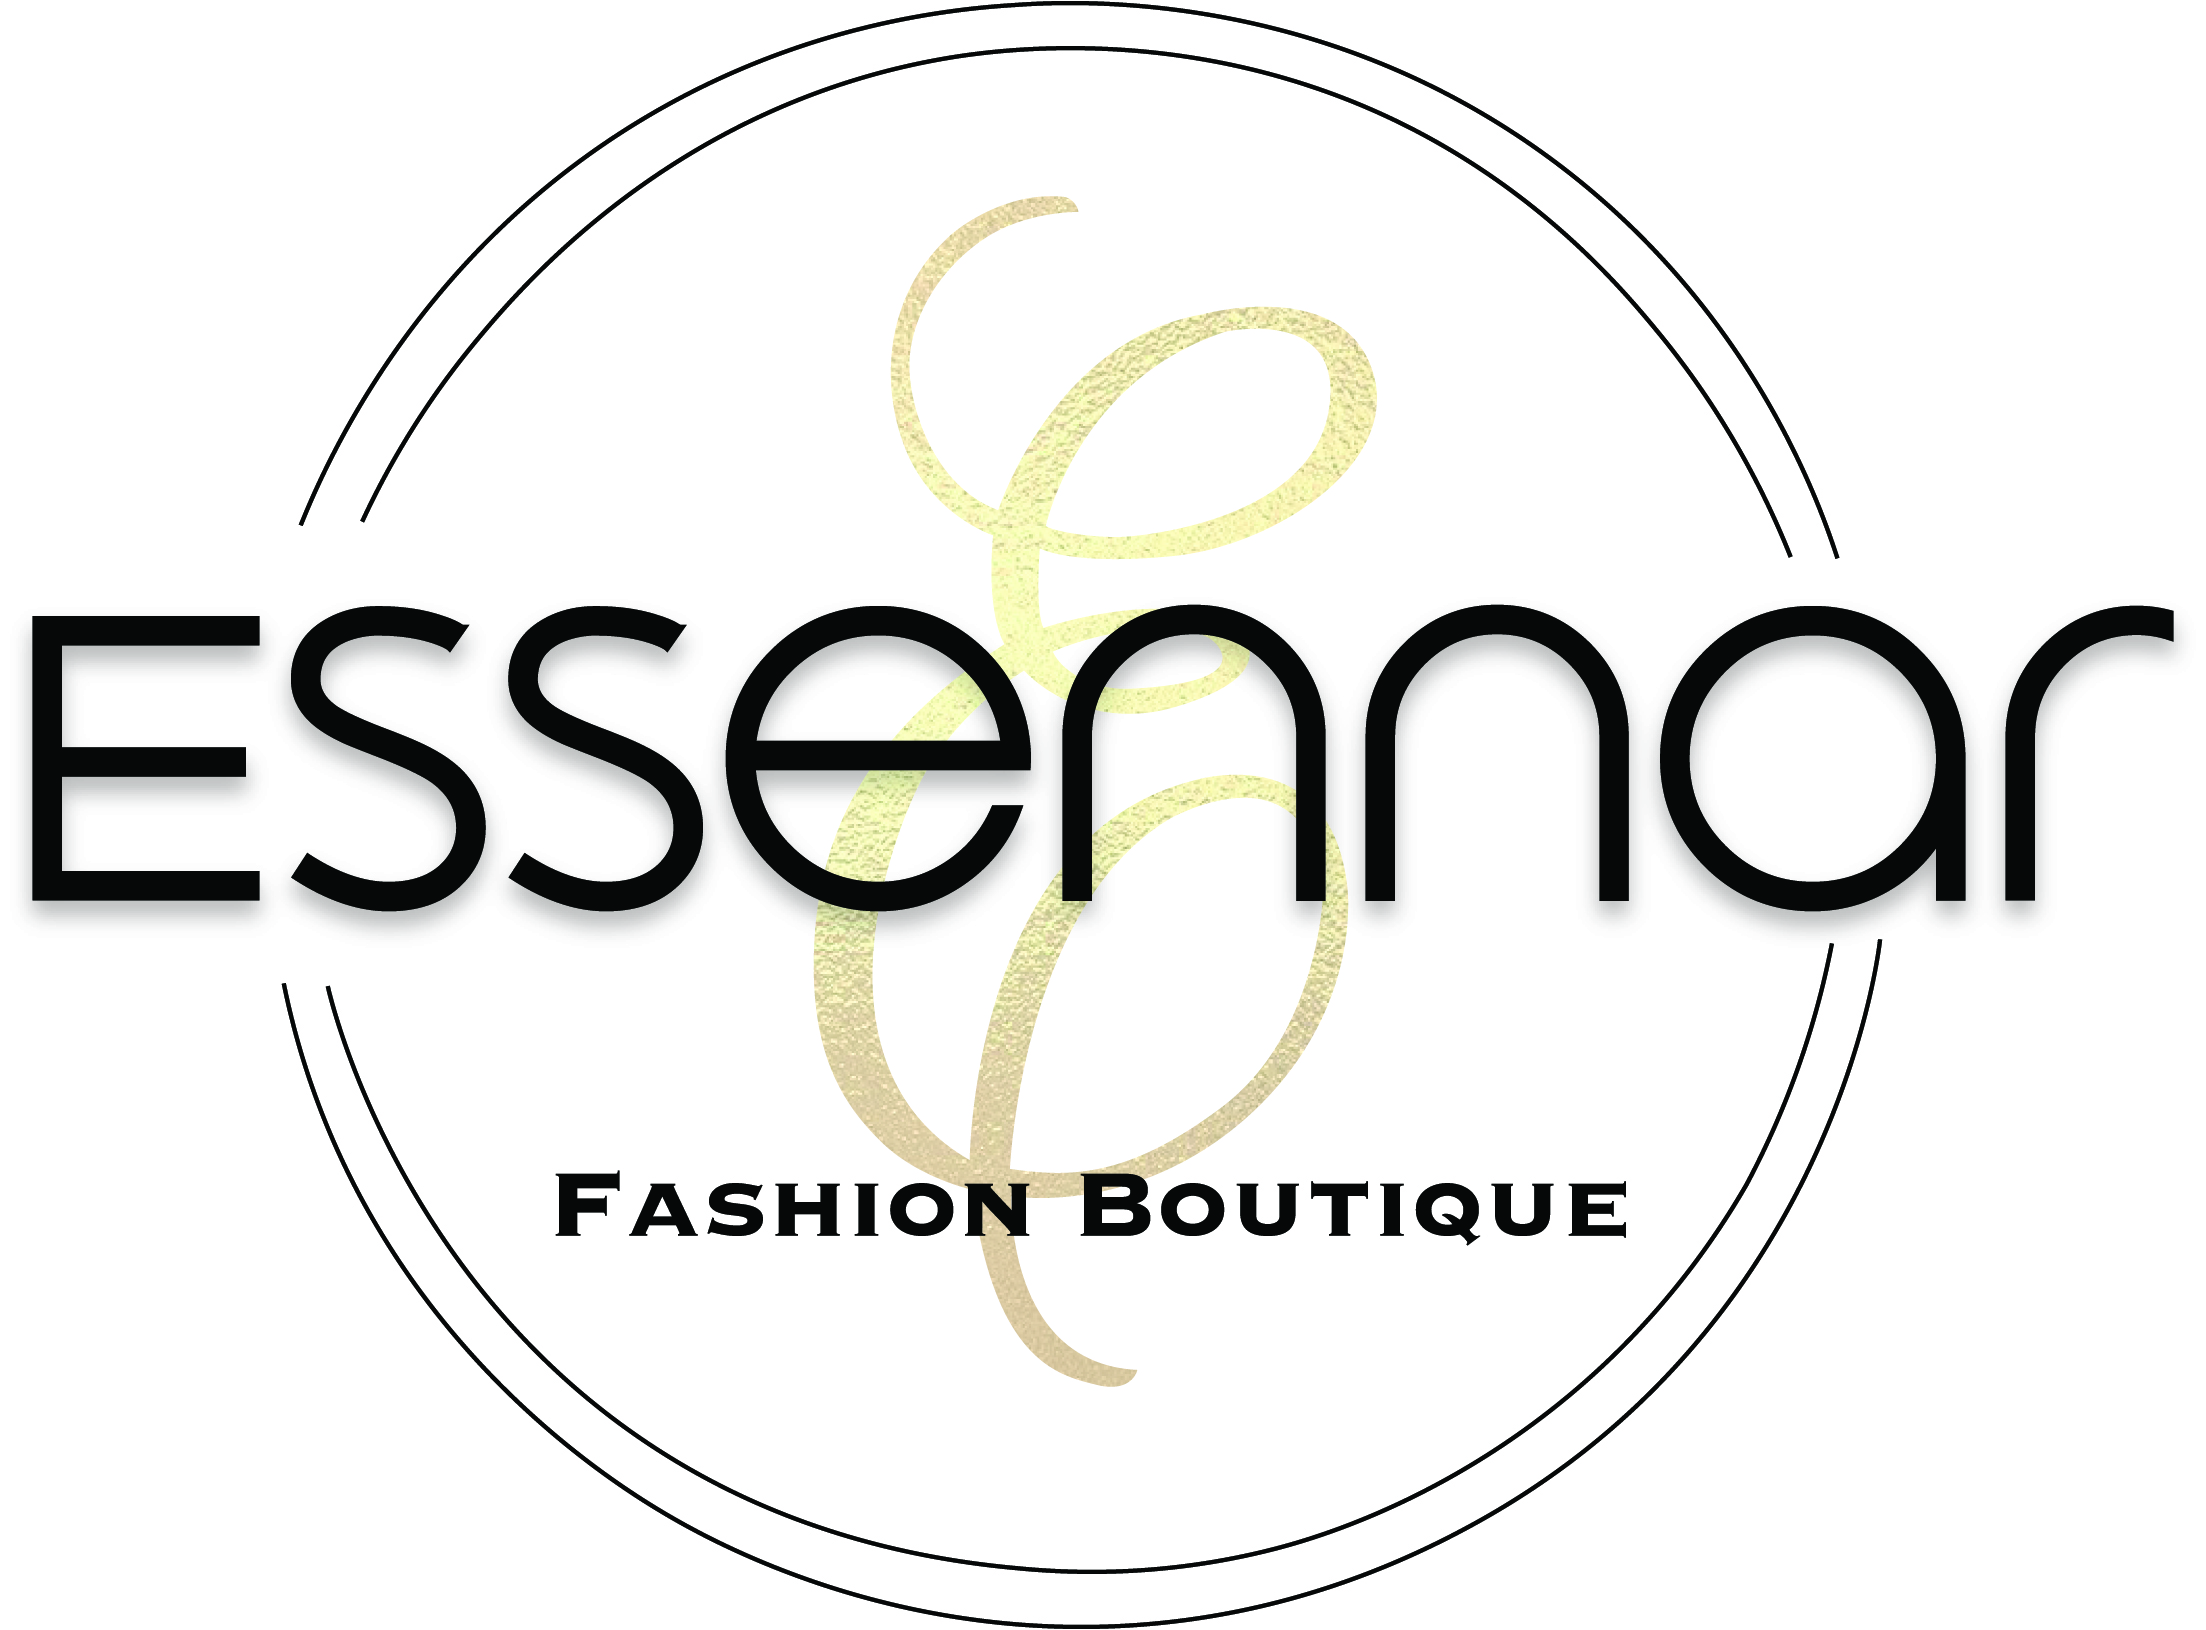 Essennar Fashion Boutique Logo